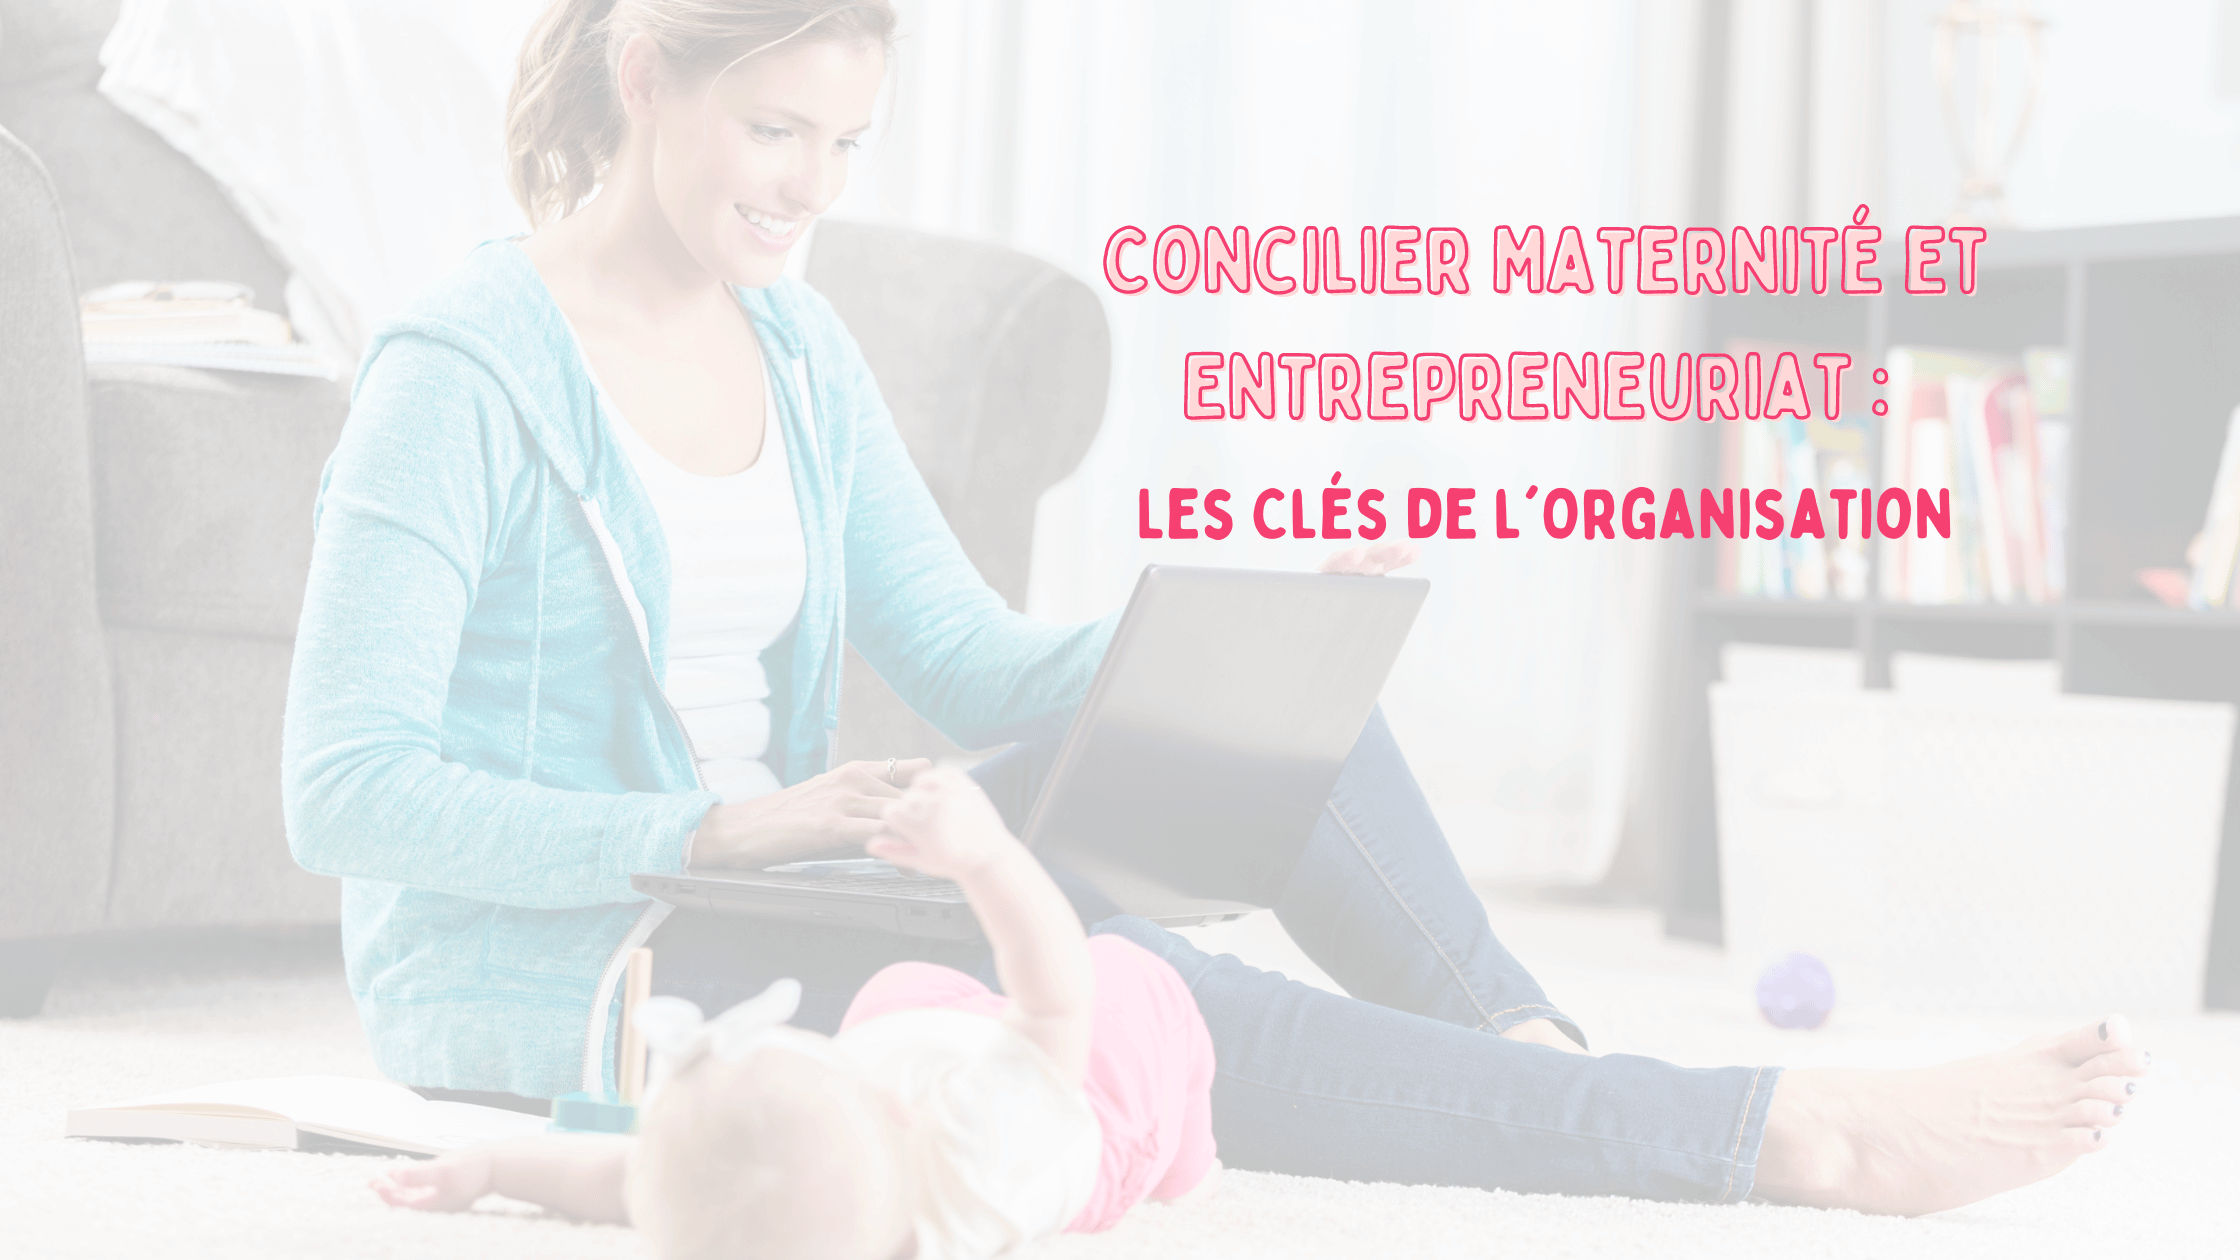 You are currently viewing Concilier Maternité et Entrepreneuriat : Les Clés de l’Organisation